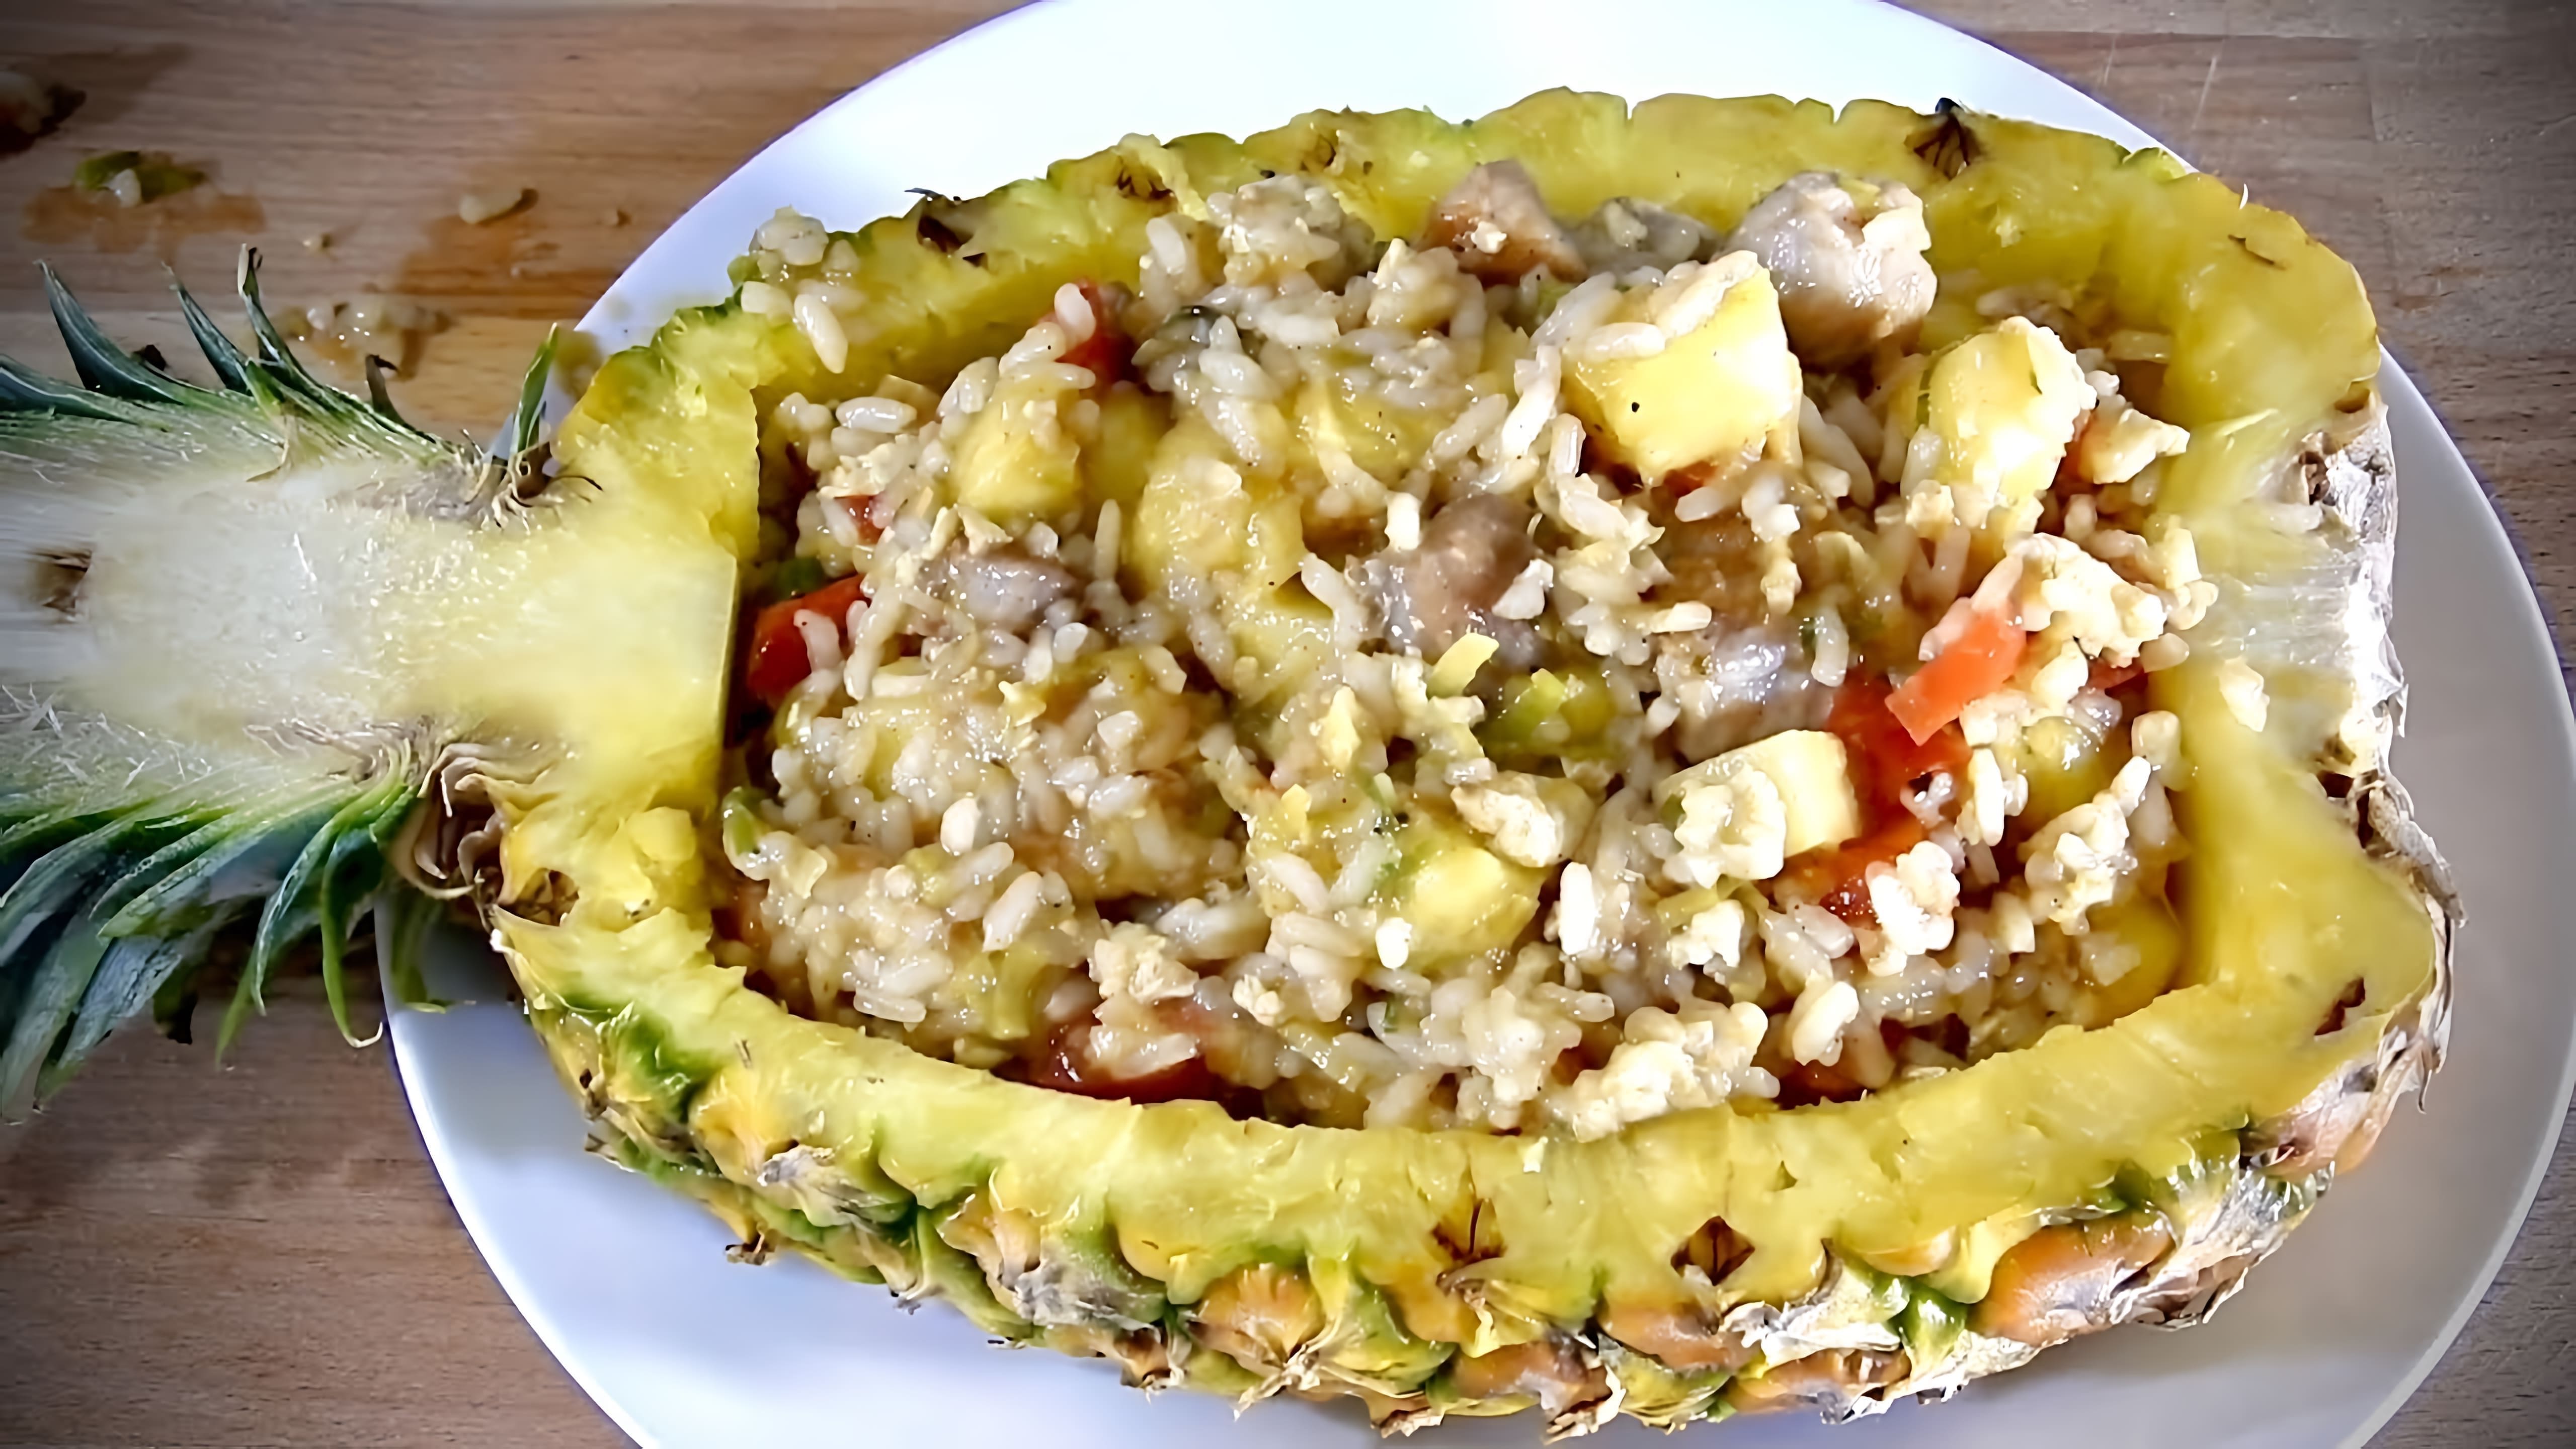 В этом видео показаны два вкусных блюда из ананаса